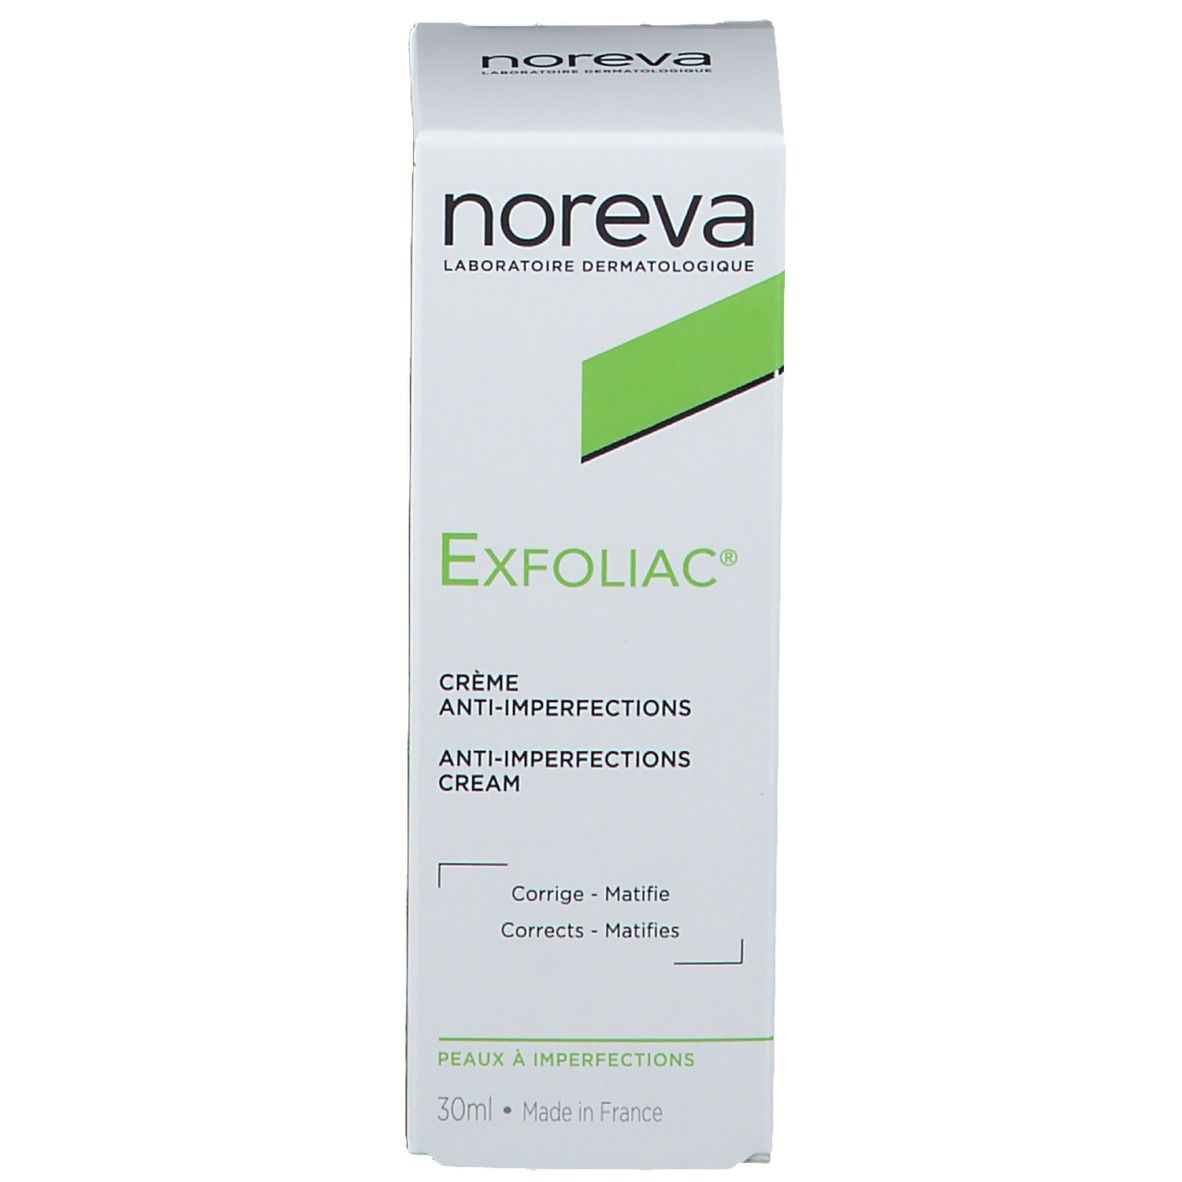 noreva Exfoliac® Creme